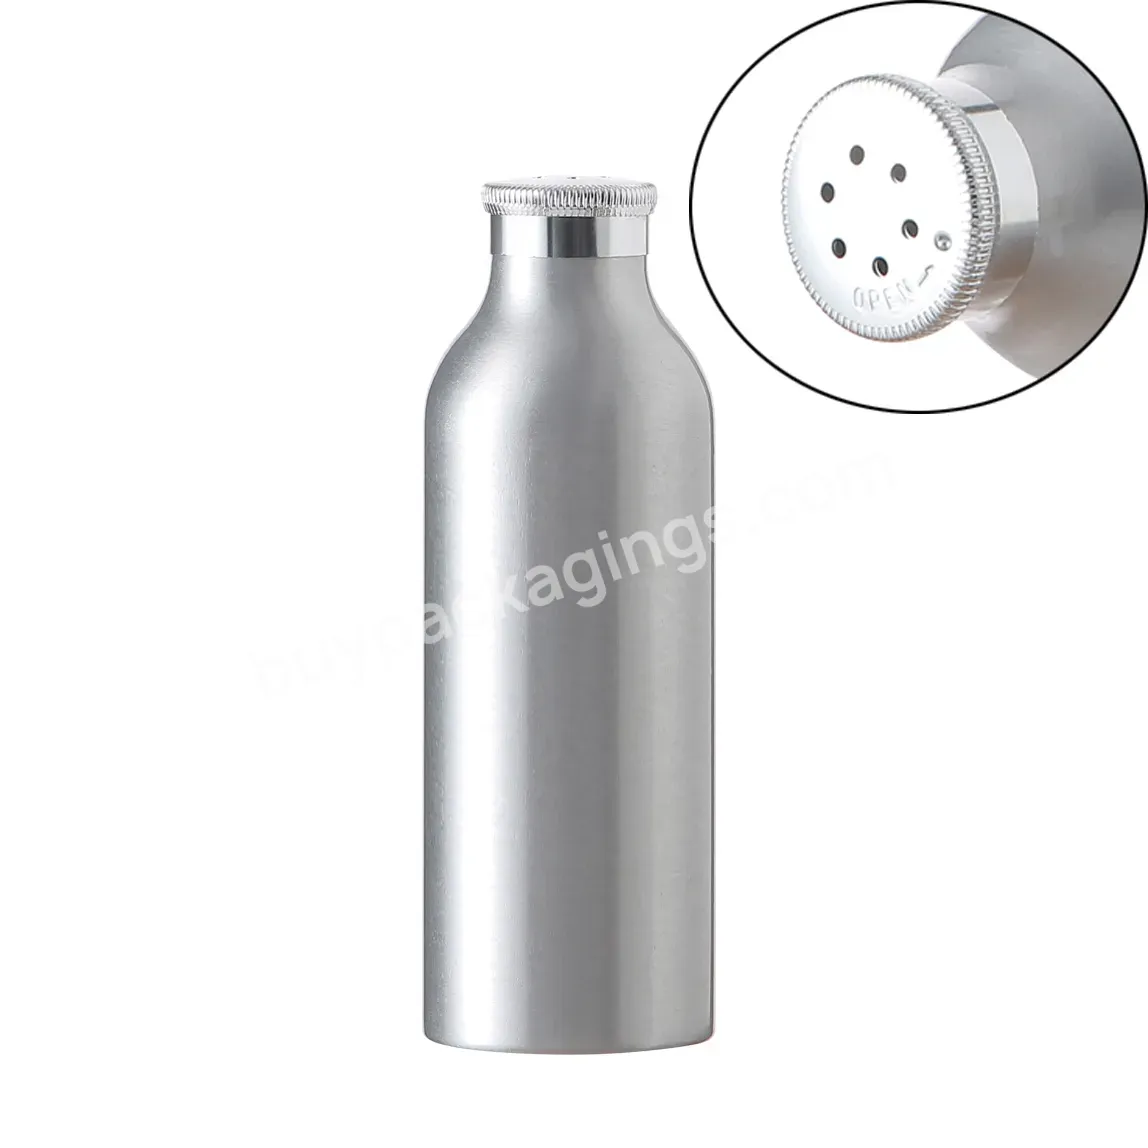 Oem Shiny Silver Aluminum Powder Shaker Bottle For Baby Care 100g